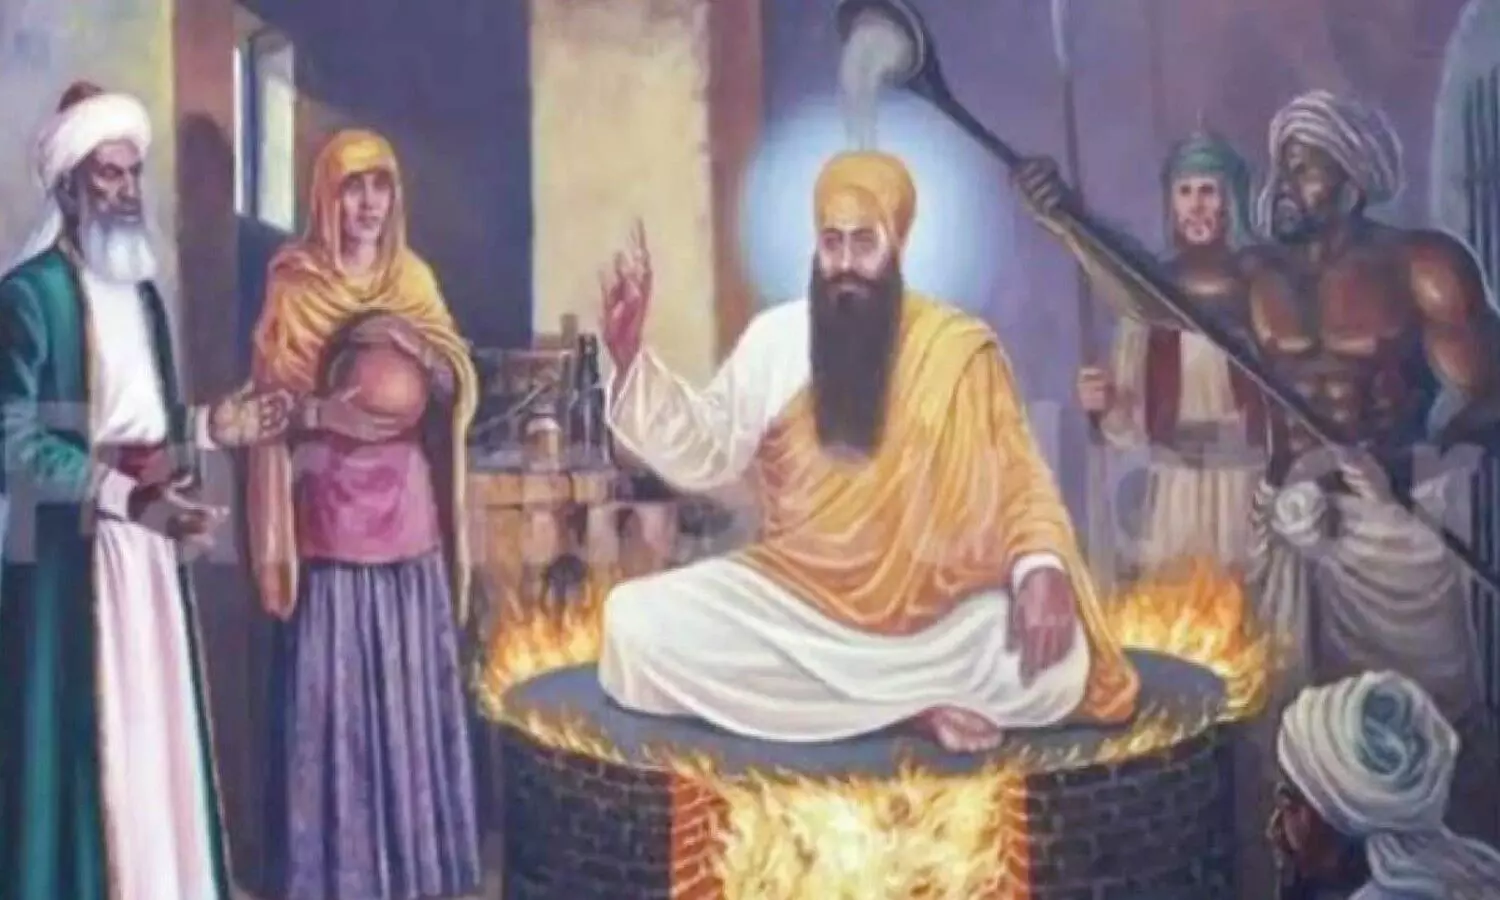 Guru Arjan Dev Martyrdom Day 2021 : इसलिए जहांगीर बन गया था जान का दुश्मन, अकबर करते थे पसंद